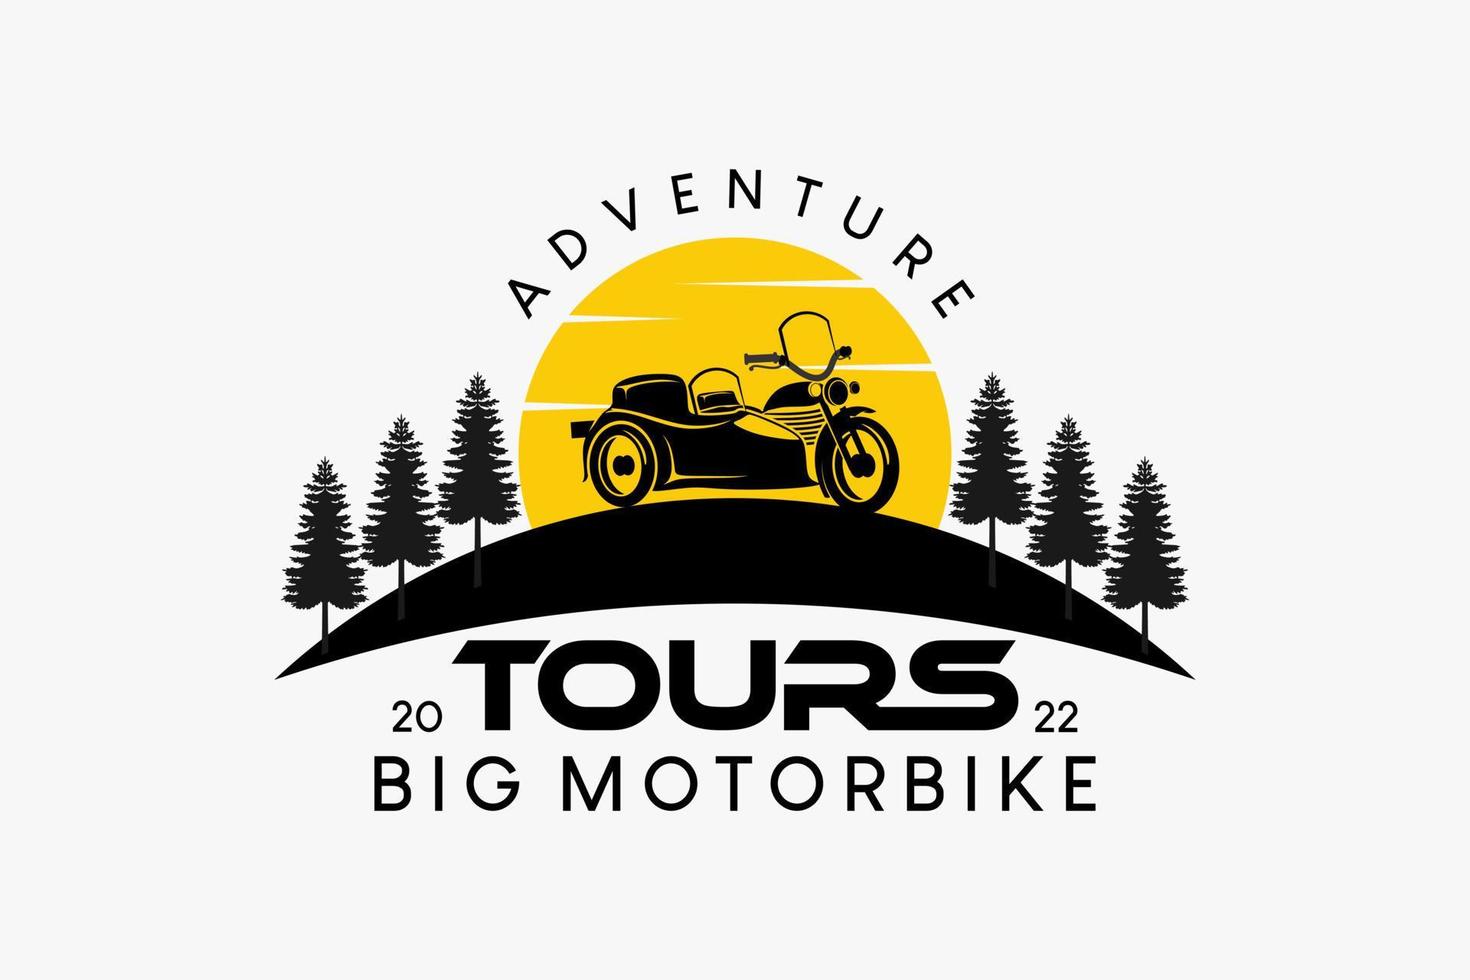 grande motocicletta logo design sidecar per viaggio o avventura, grande motocicletta silhouette combinato con abete e sole vettore